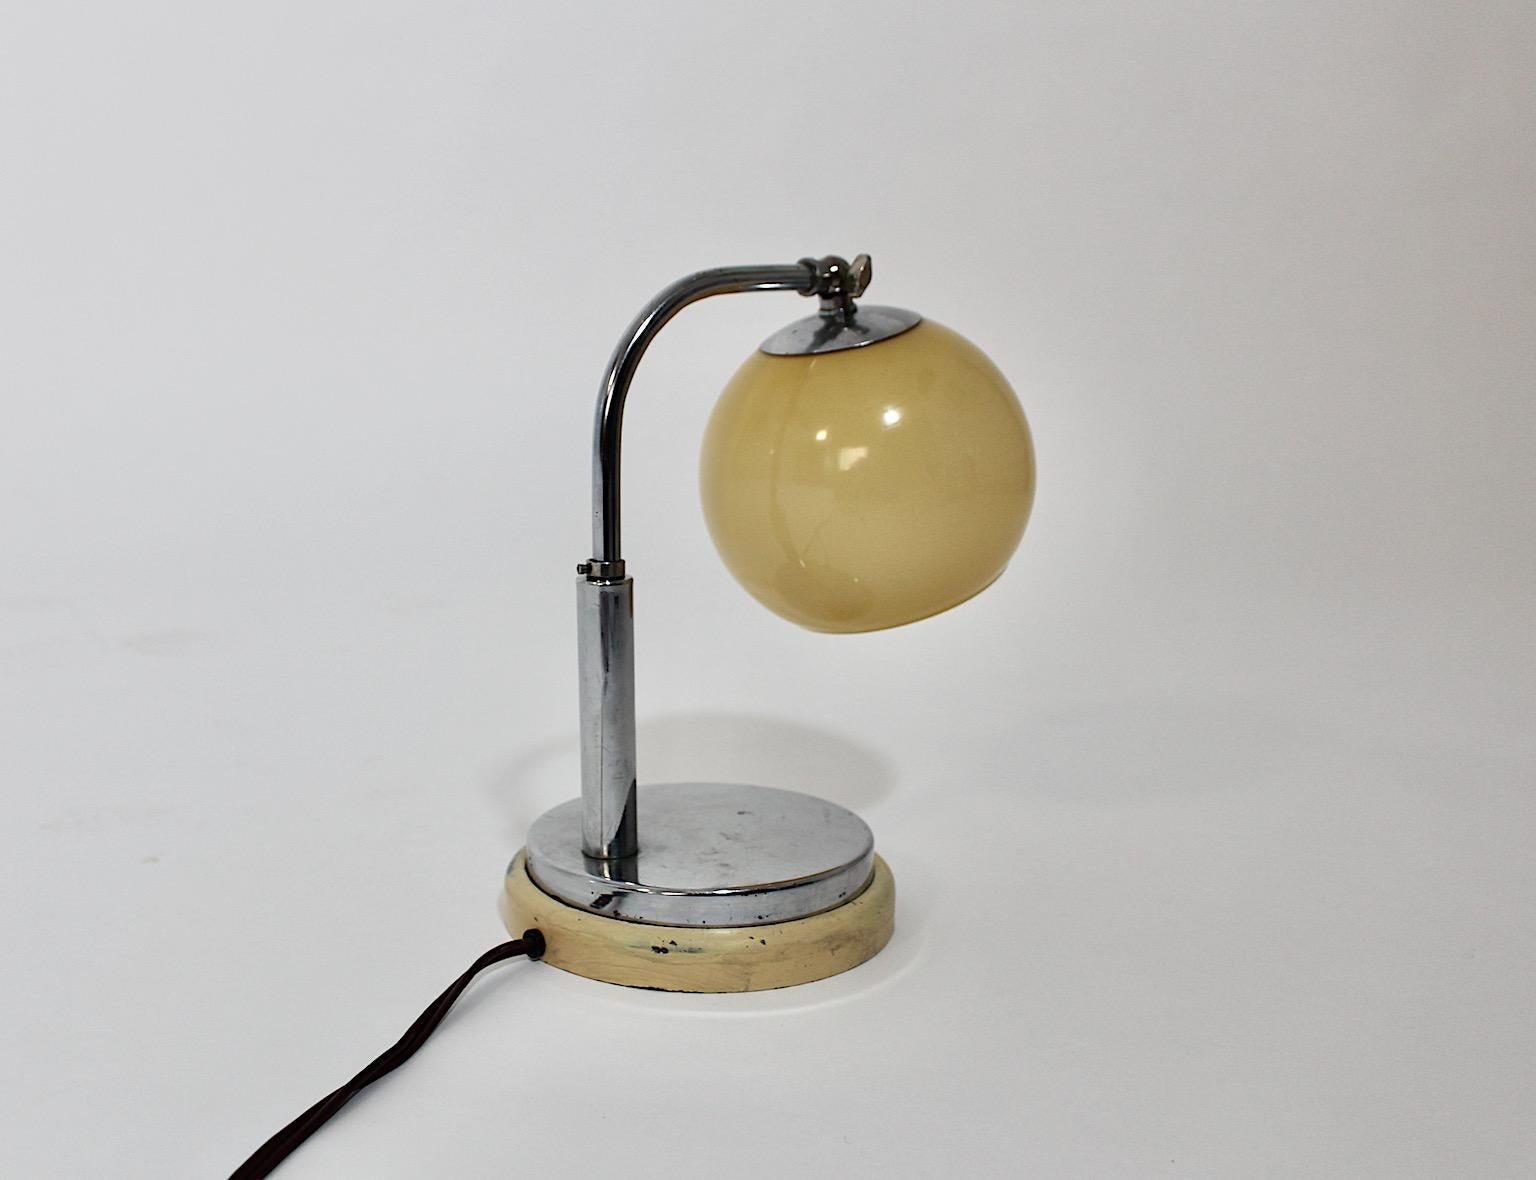 Bauhaus Vintage Tischlampe oder Nachttischlampe Modell Tastlicht von Marianne Brandt für Ruppelwerke 1920er Jahre Deutschland.
Der Name 